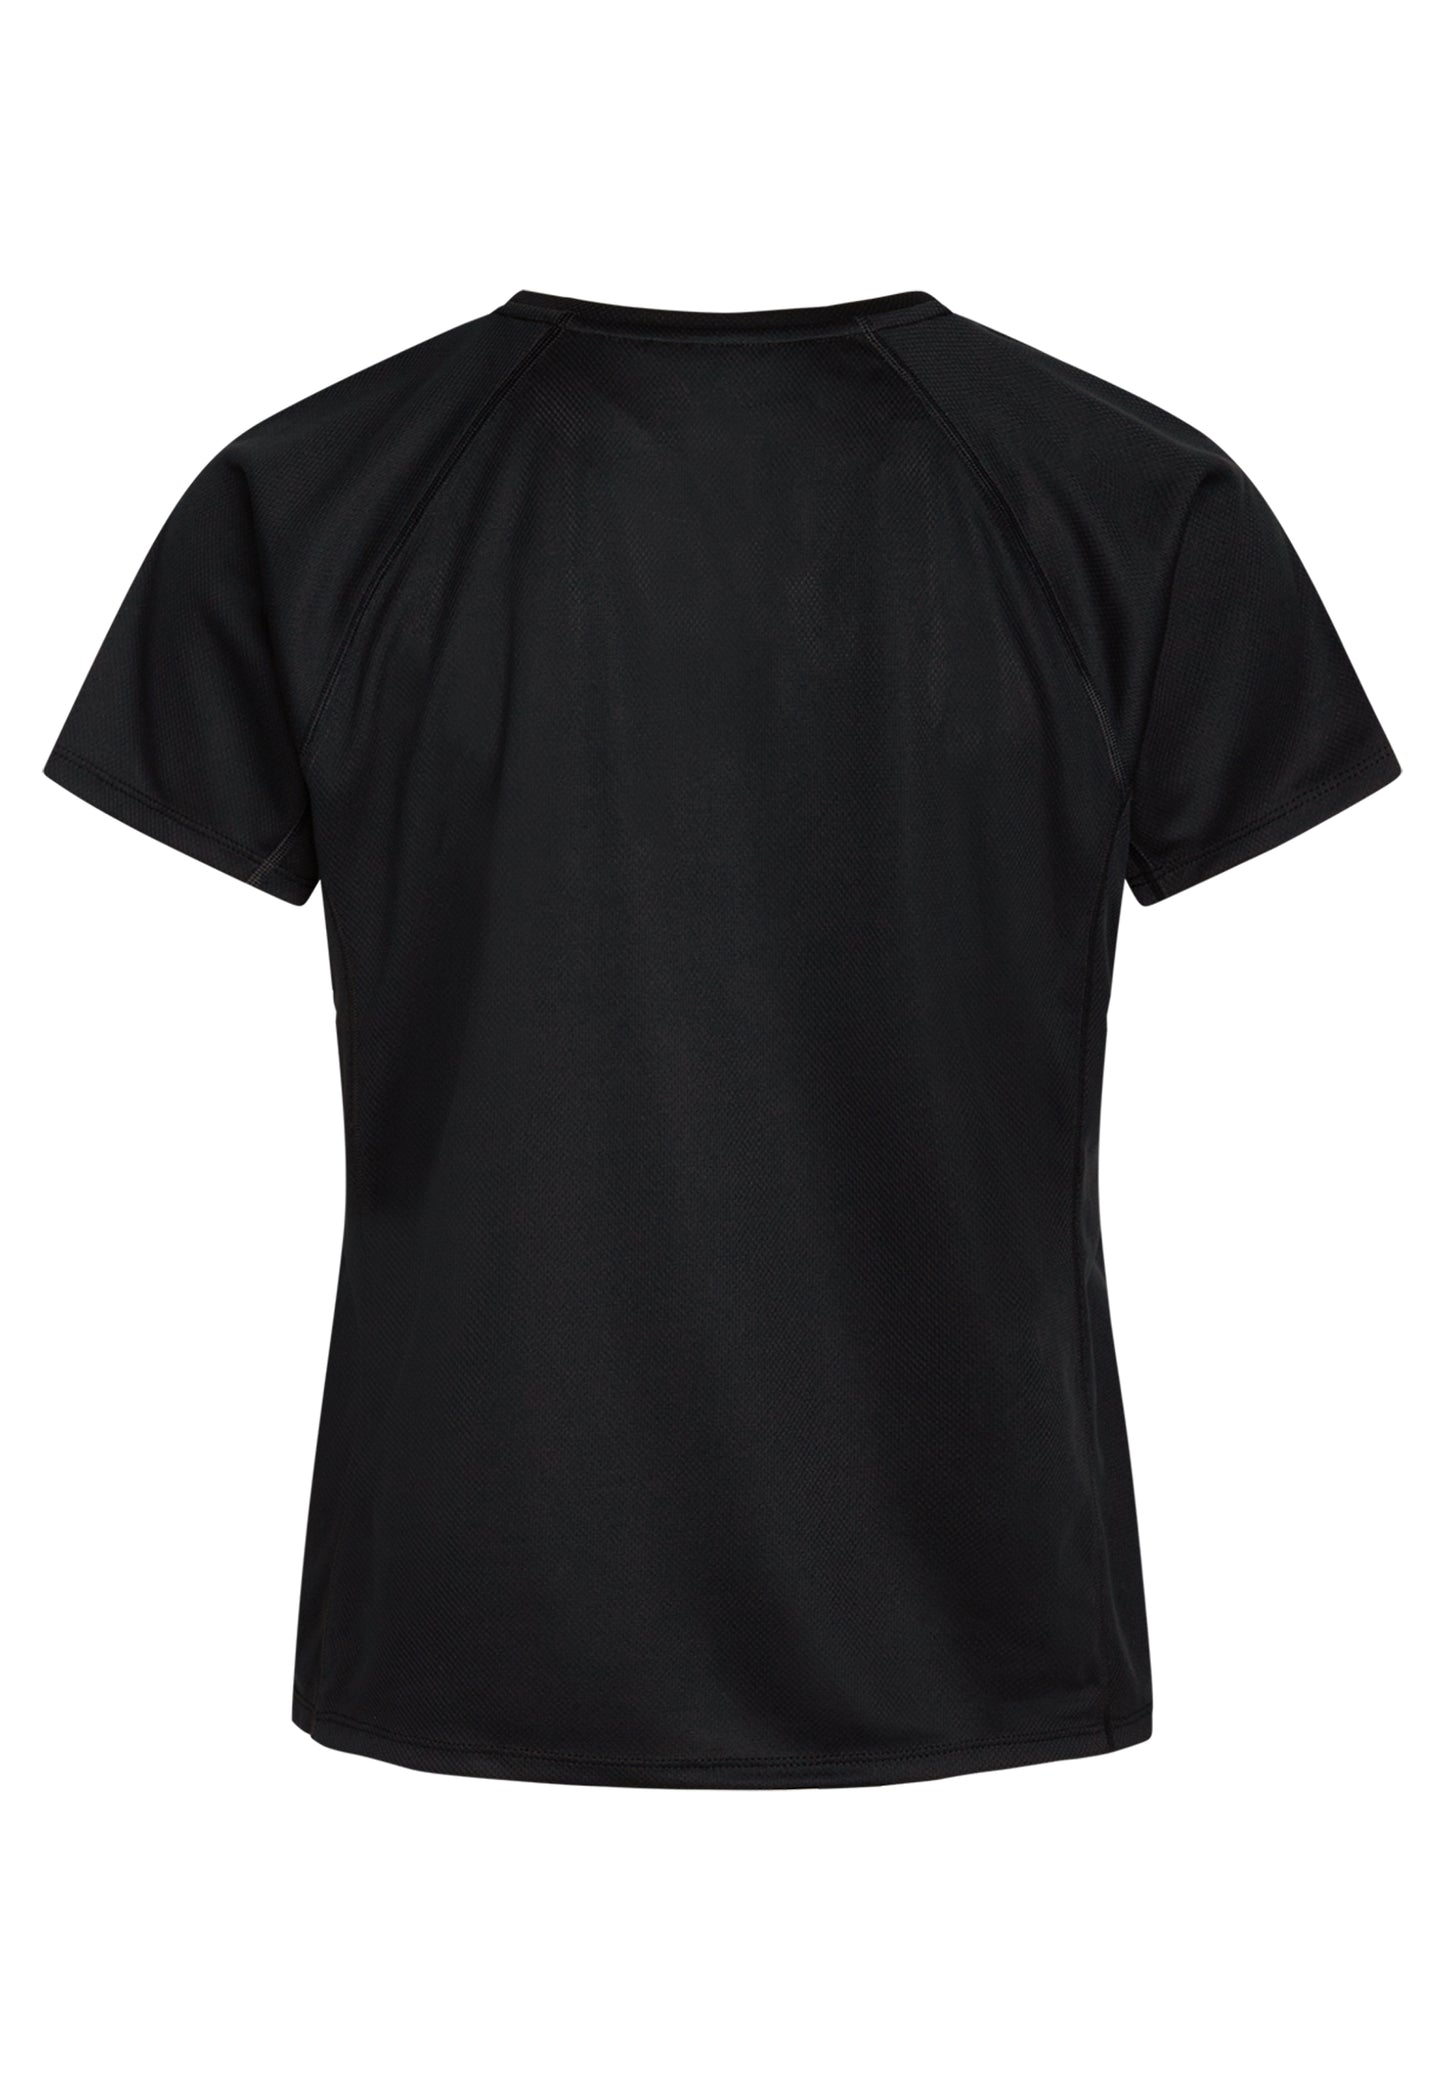 Zebdia Sports t-shirt med front print til kvinder sort